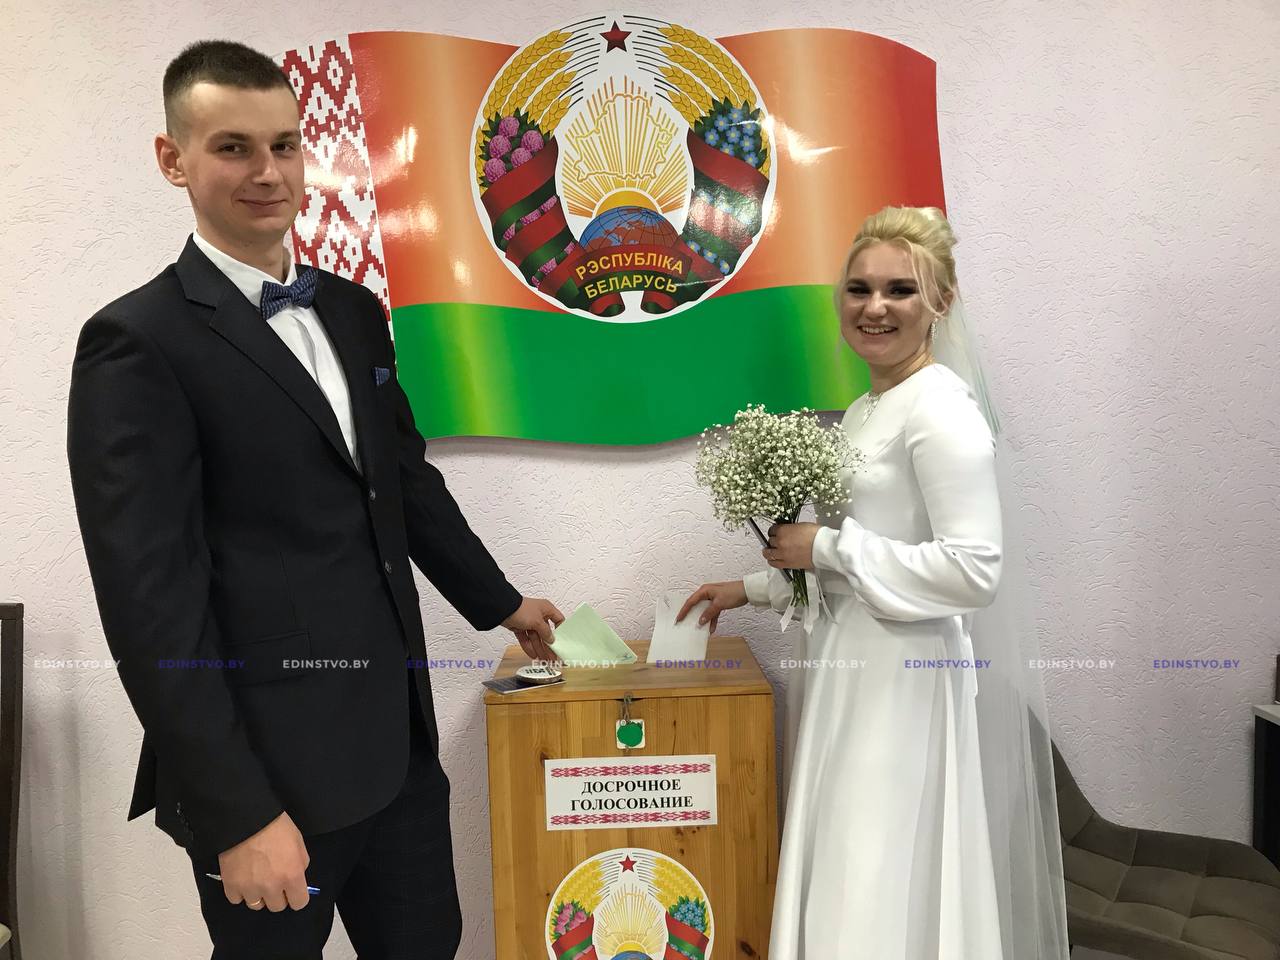 ﻿Молодожены проголосовали досрочно в день свадьбы в Борисове